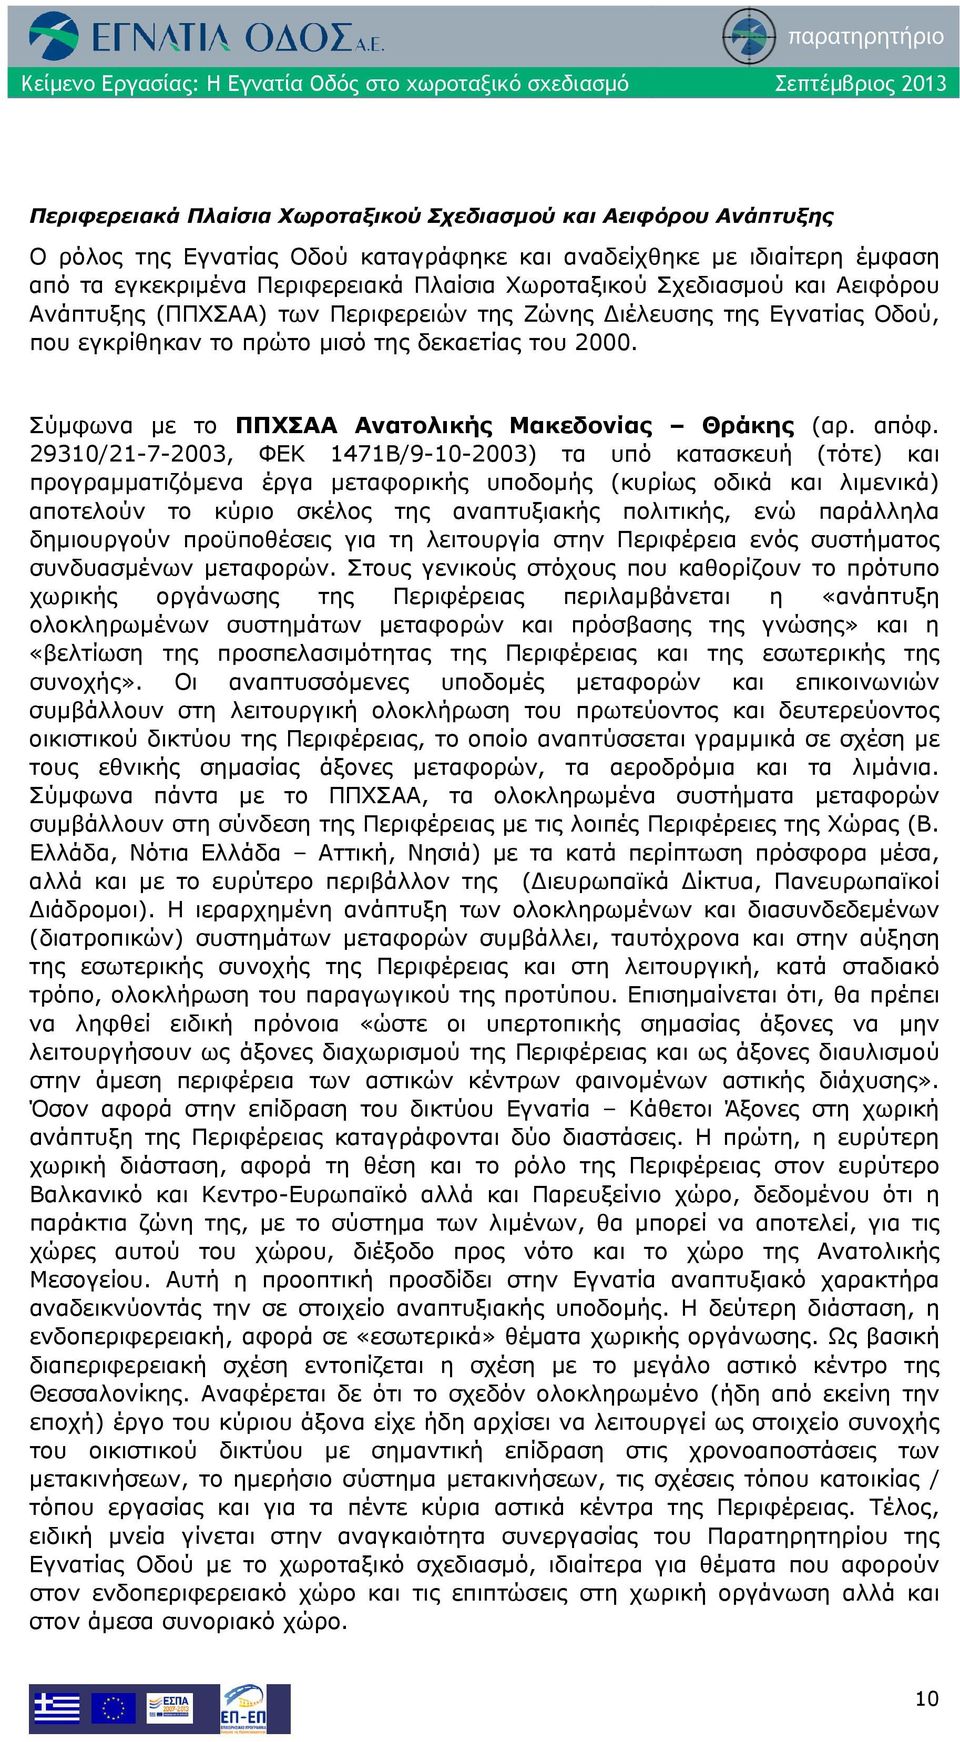 Σύμφωνα με το ΠΠΧΣΑΑ Ανατολικής Μακεδονίας Θράκης (αρ. απόφ.